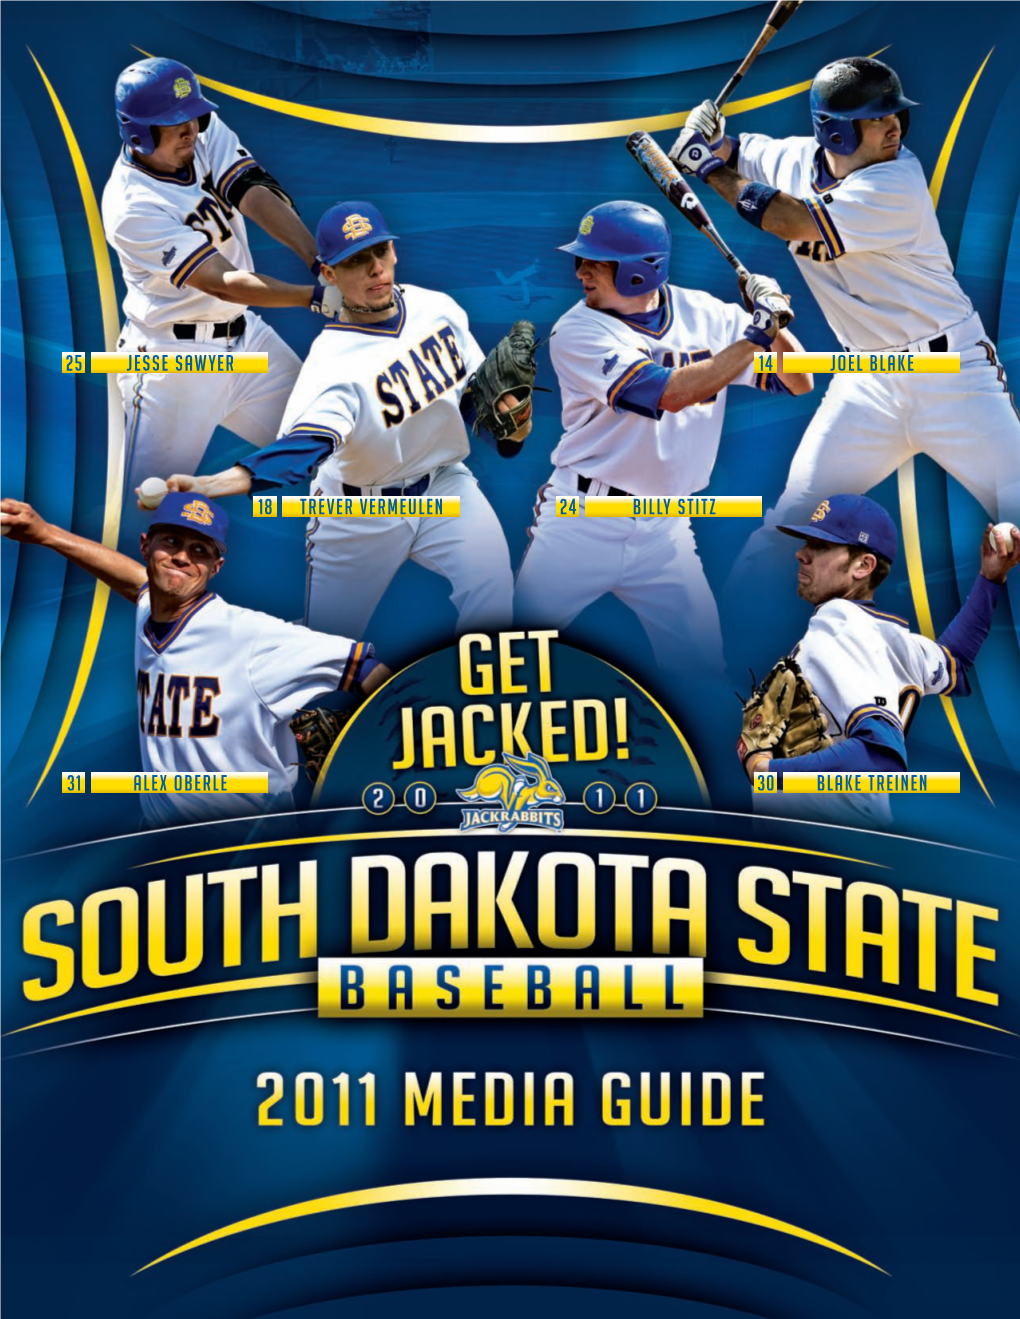 South Dakota State Baseball 2011 Media Guide